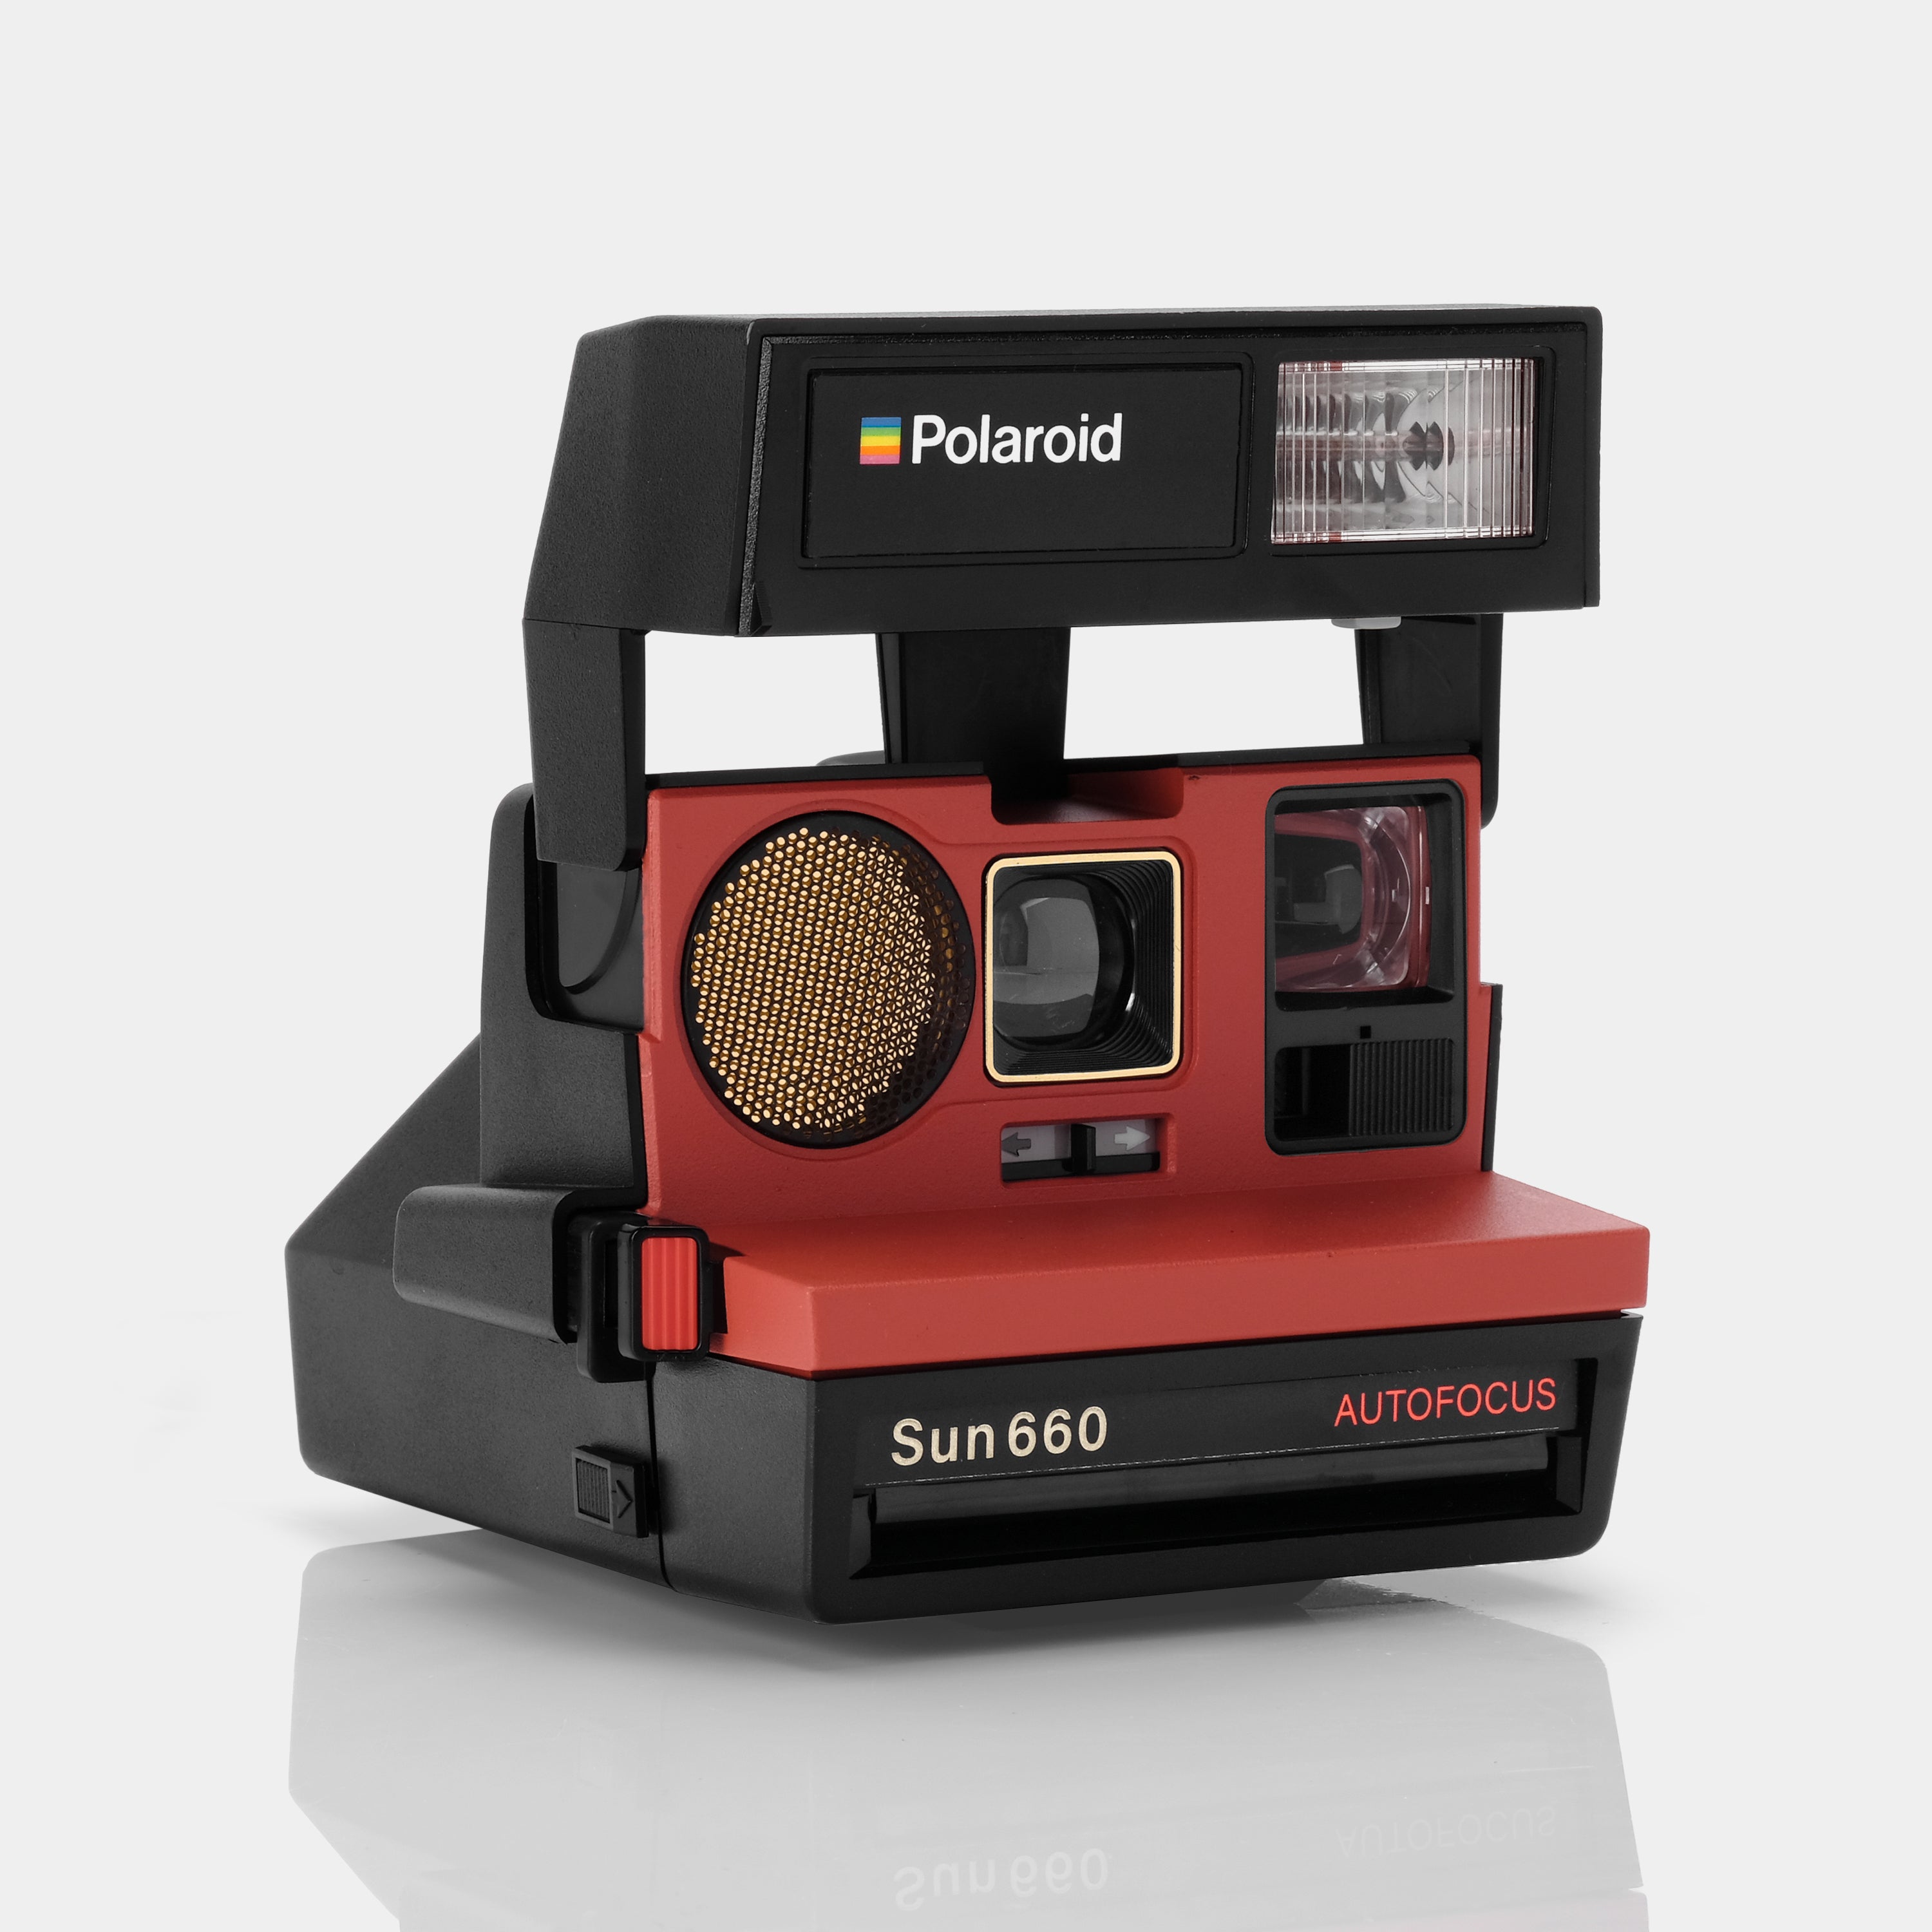 Polaroid 600 Sun660 Autofocus Poppy Instant Film Camera